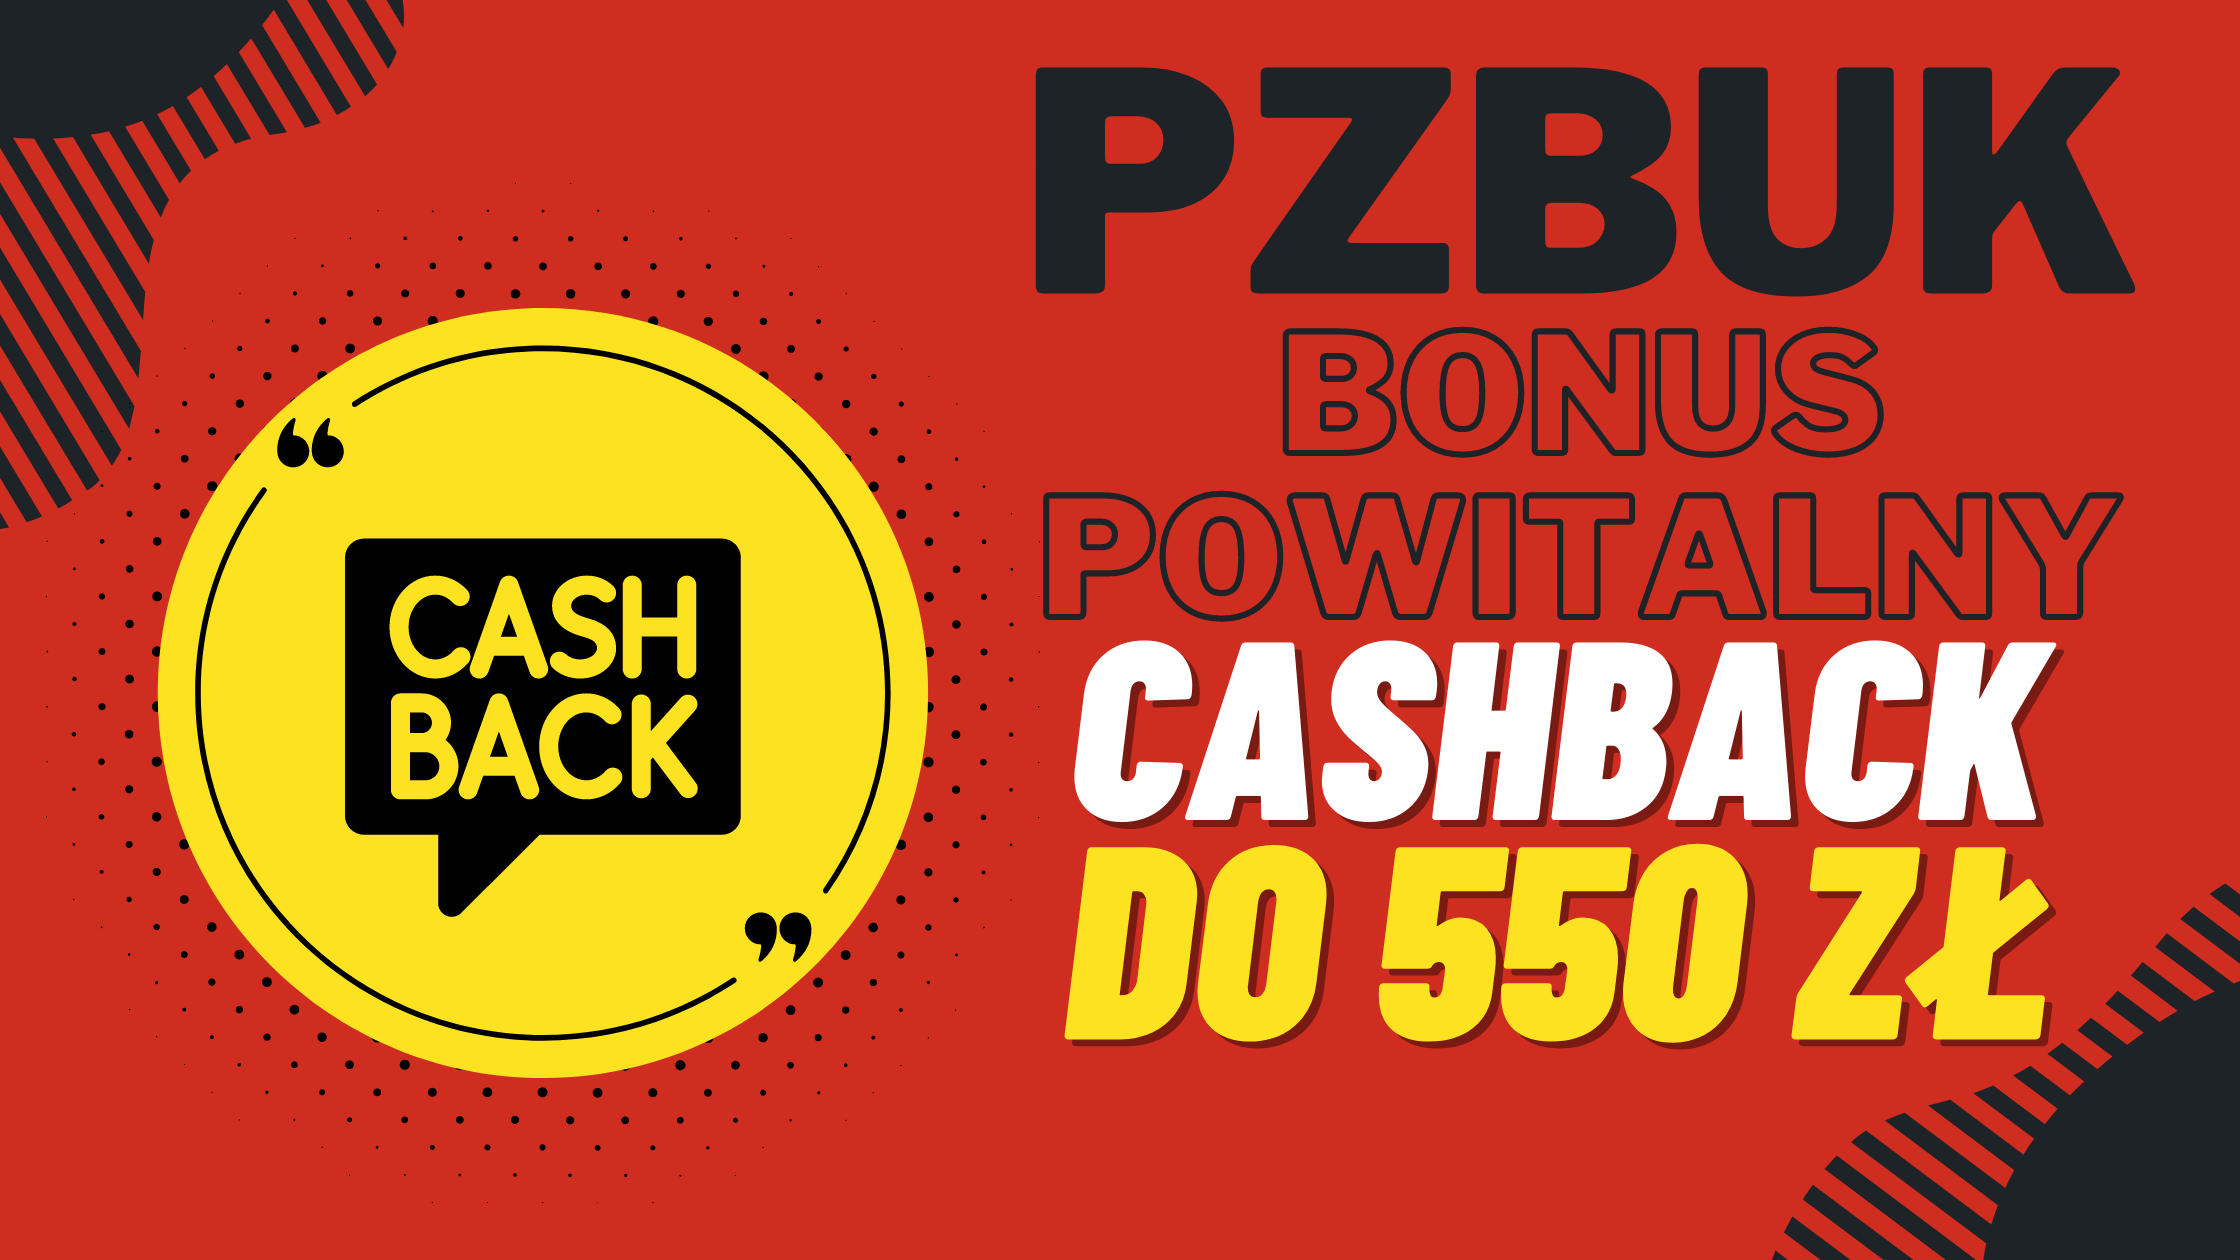 PZBuk bonus powitalny dla nowych graczy - cashback do 550 zł